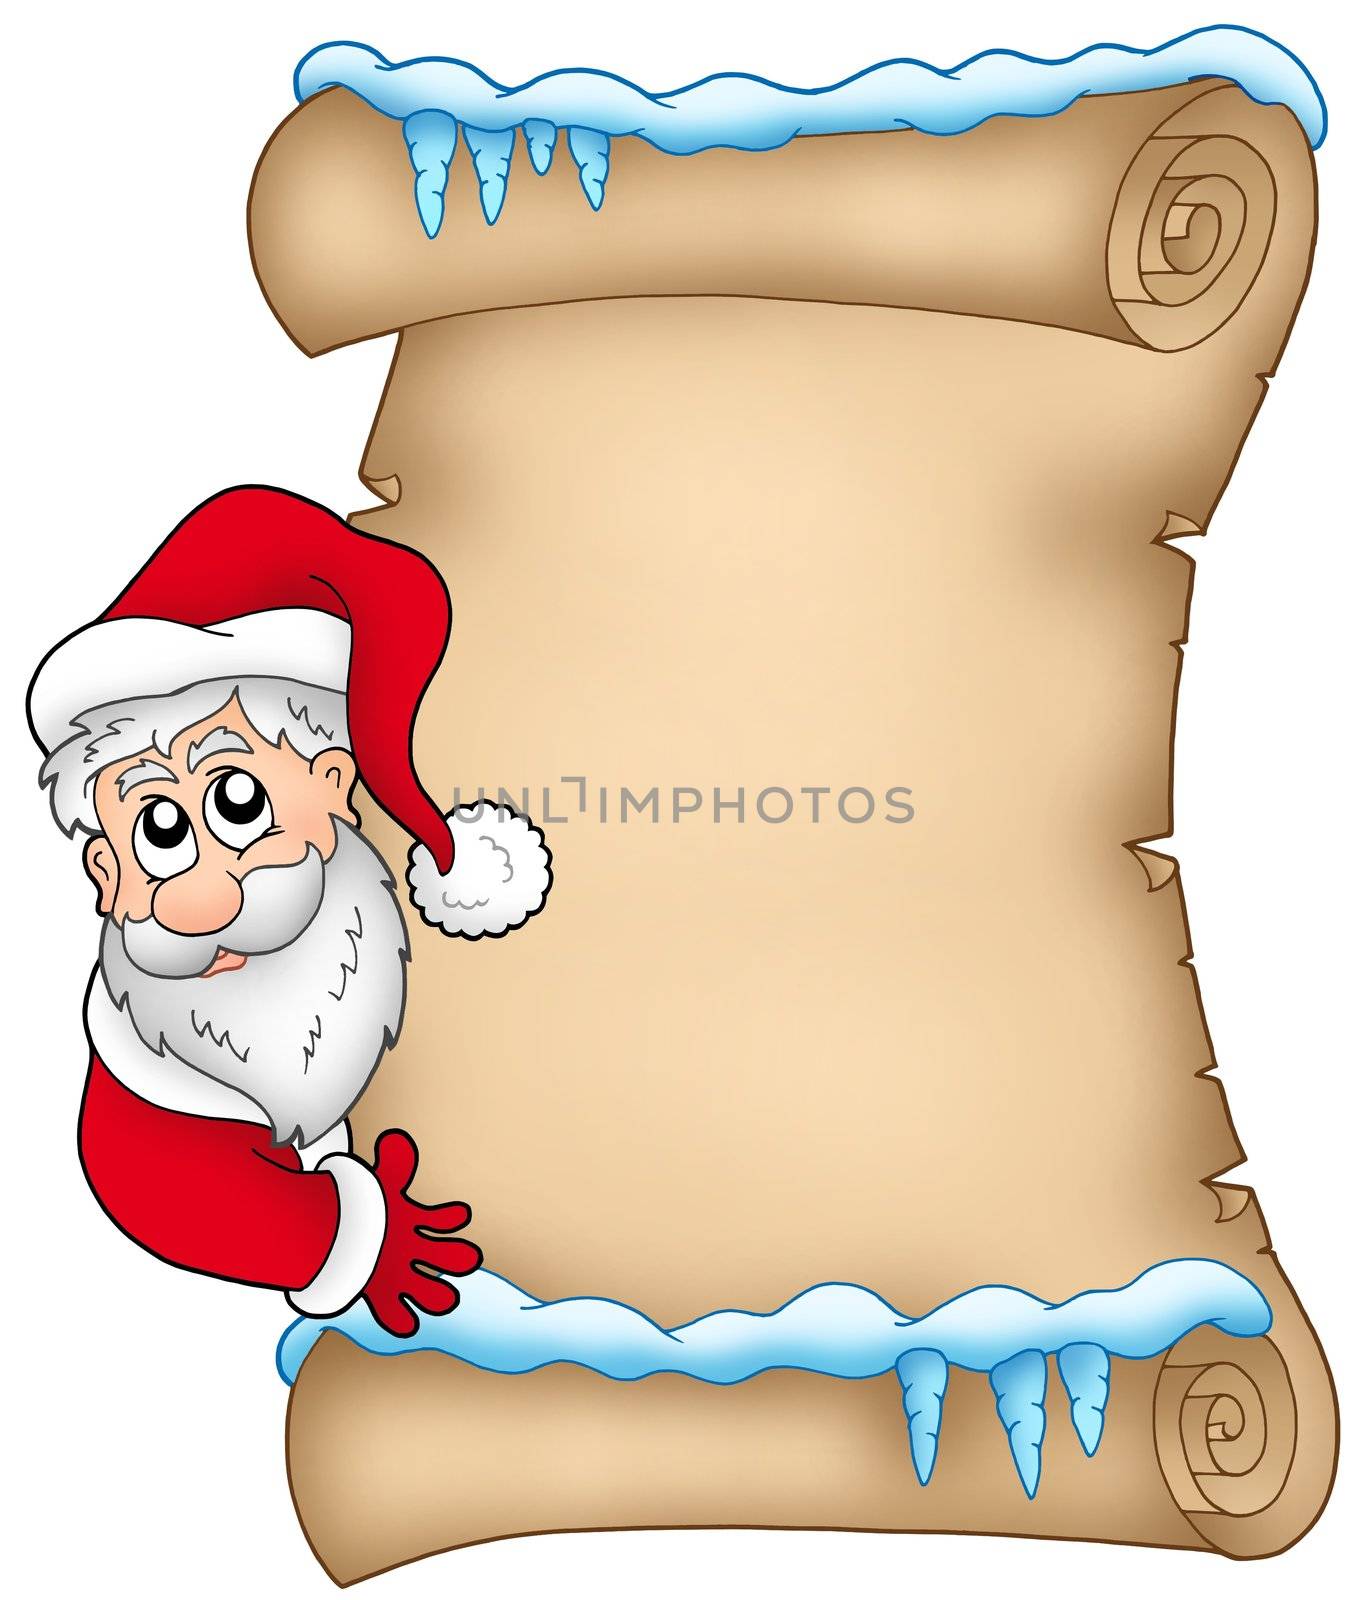 Winter parchment with Santa Claus 1 - color illustration. 